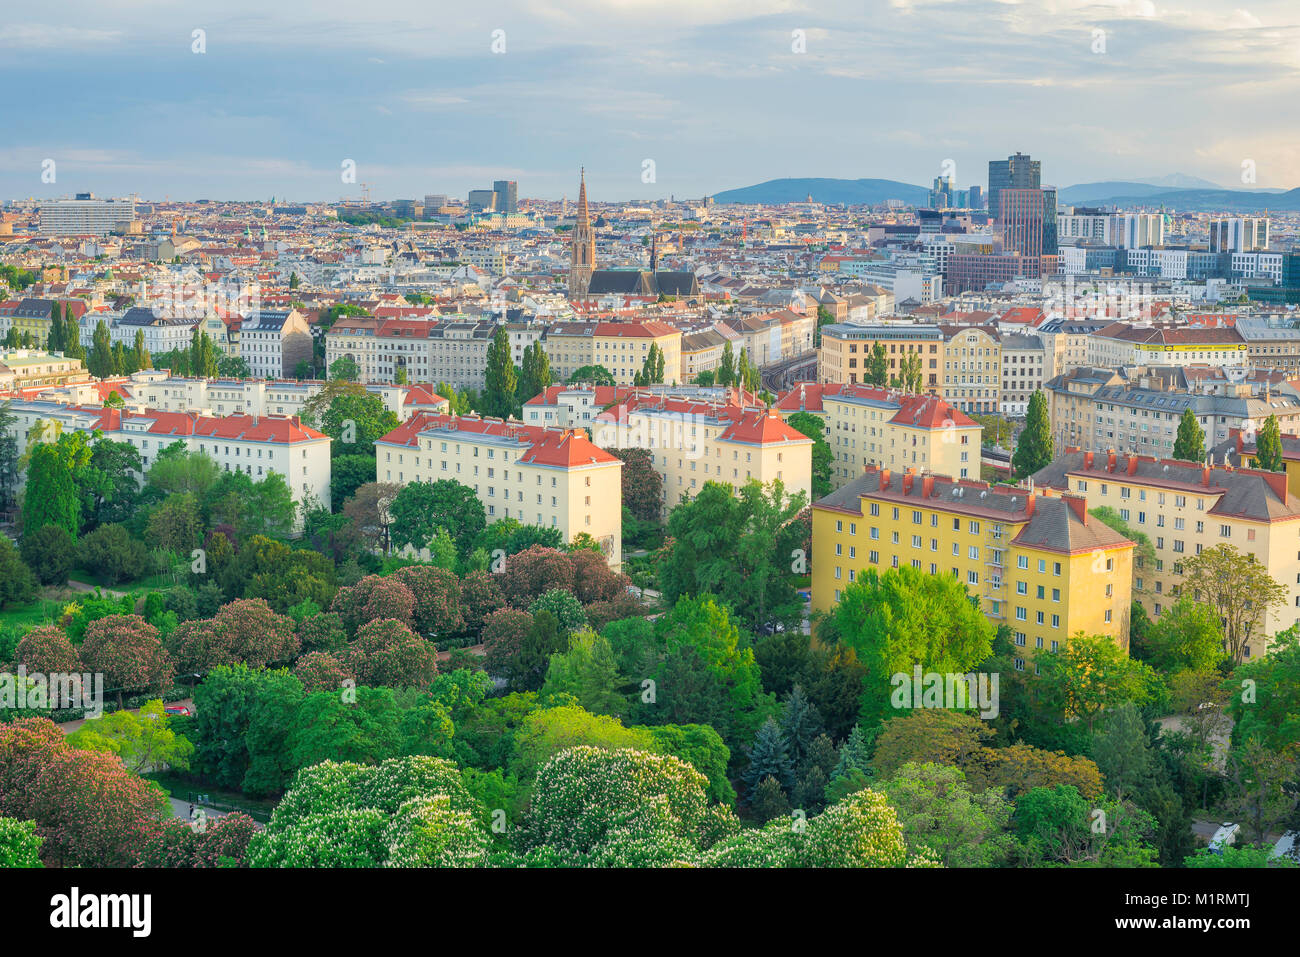 Wiener Stadtbild-Luftbild, Blick auf die Skyline von Wien mit den Bäumen des Prater-Parks im Vordergrund, Wien, Österreich. Stockfoto